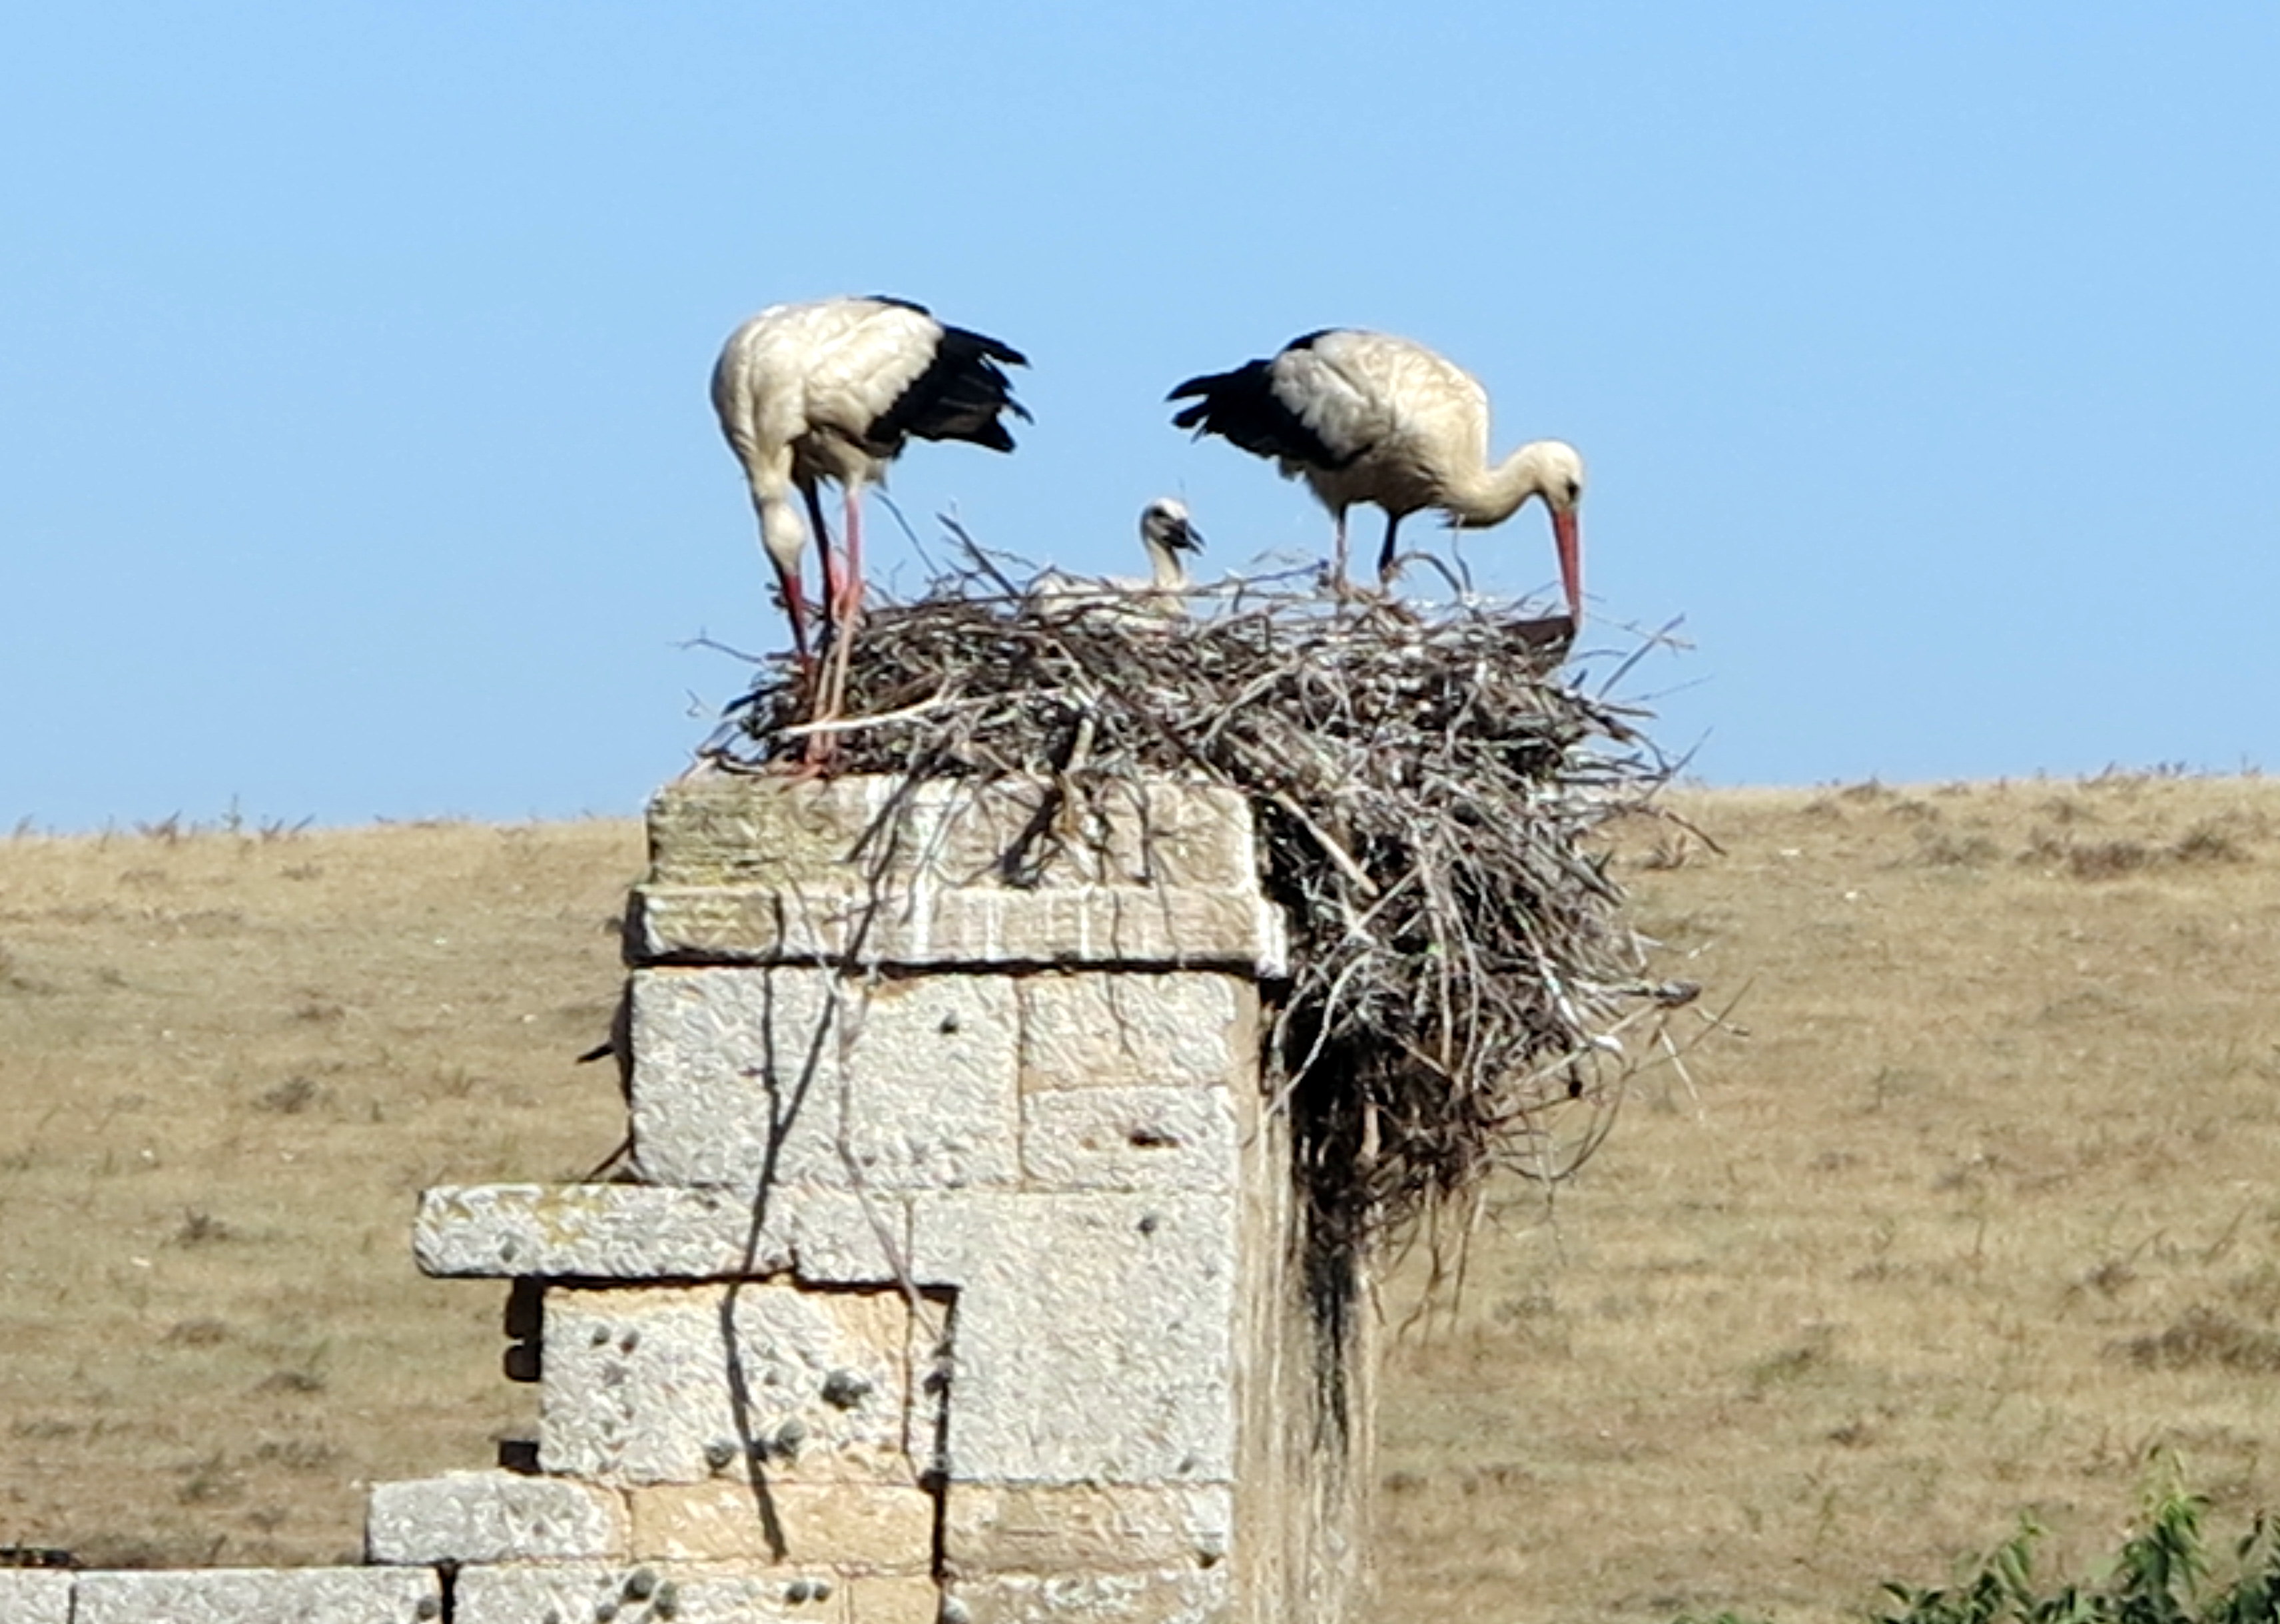 Nesting White Stork Family, Chellah